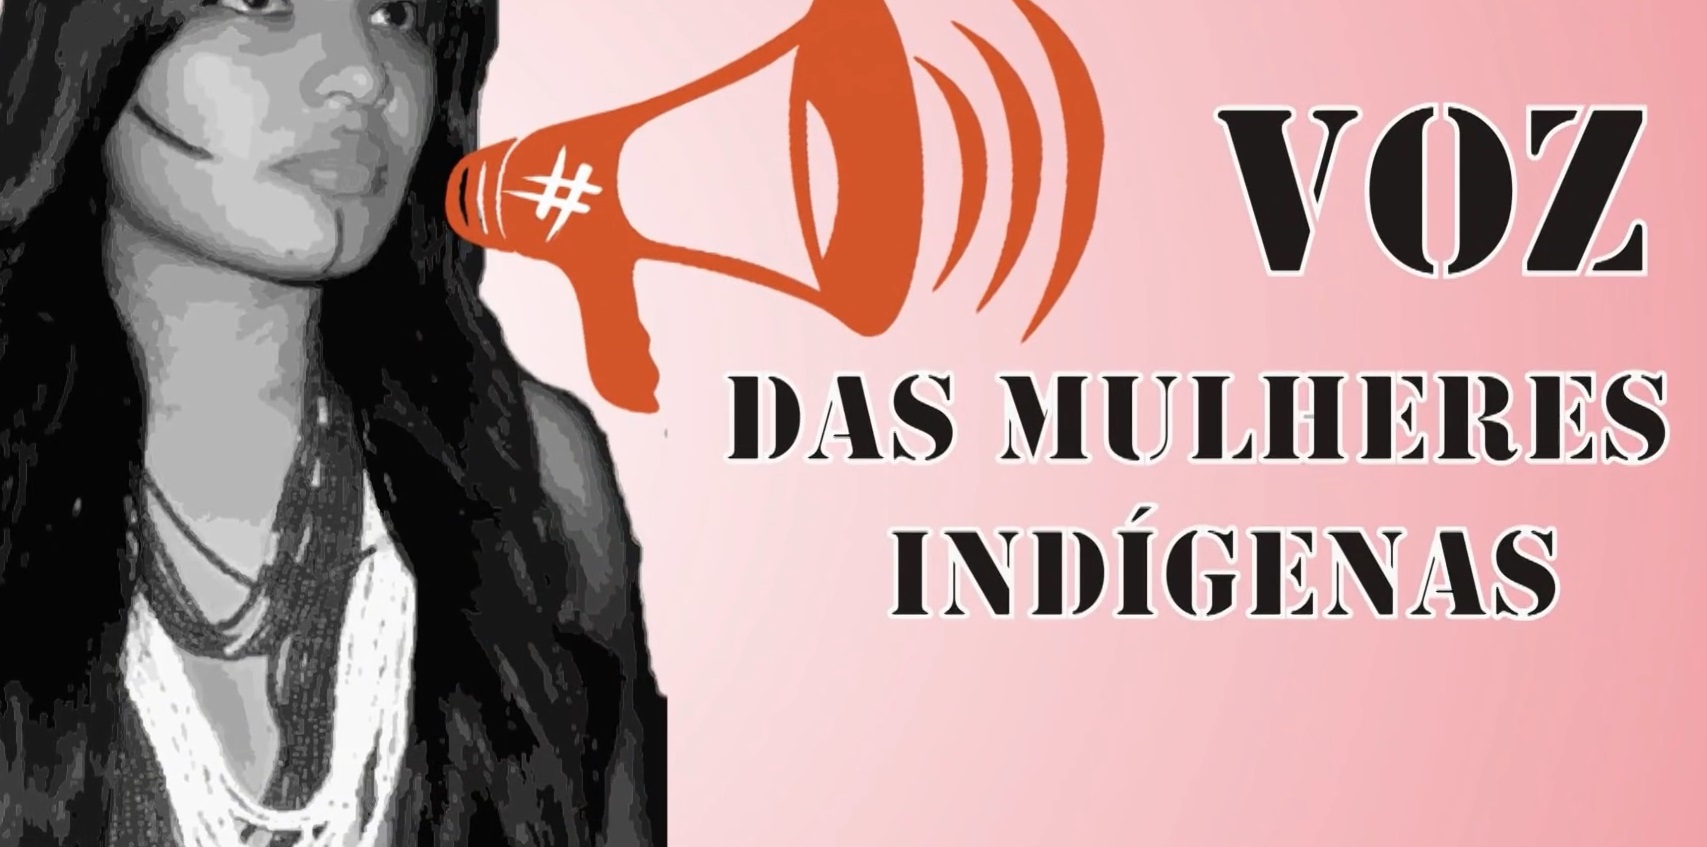 A voz das mulheres indígenas